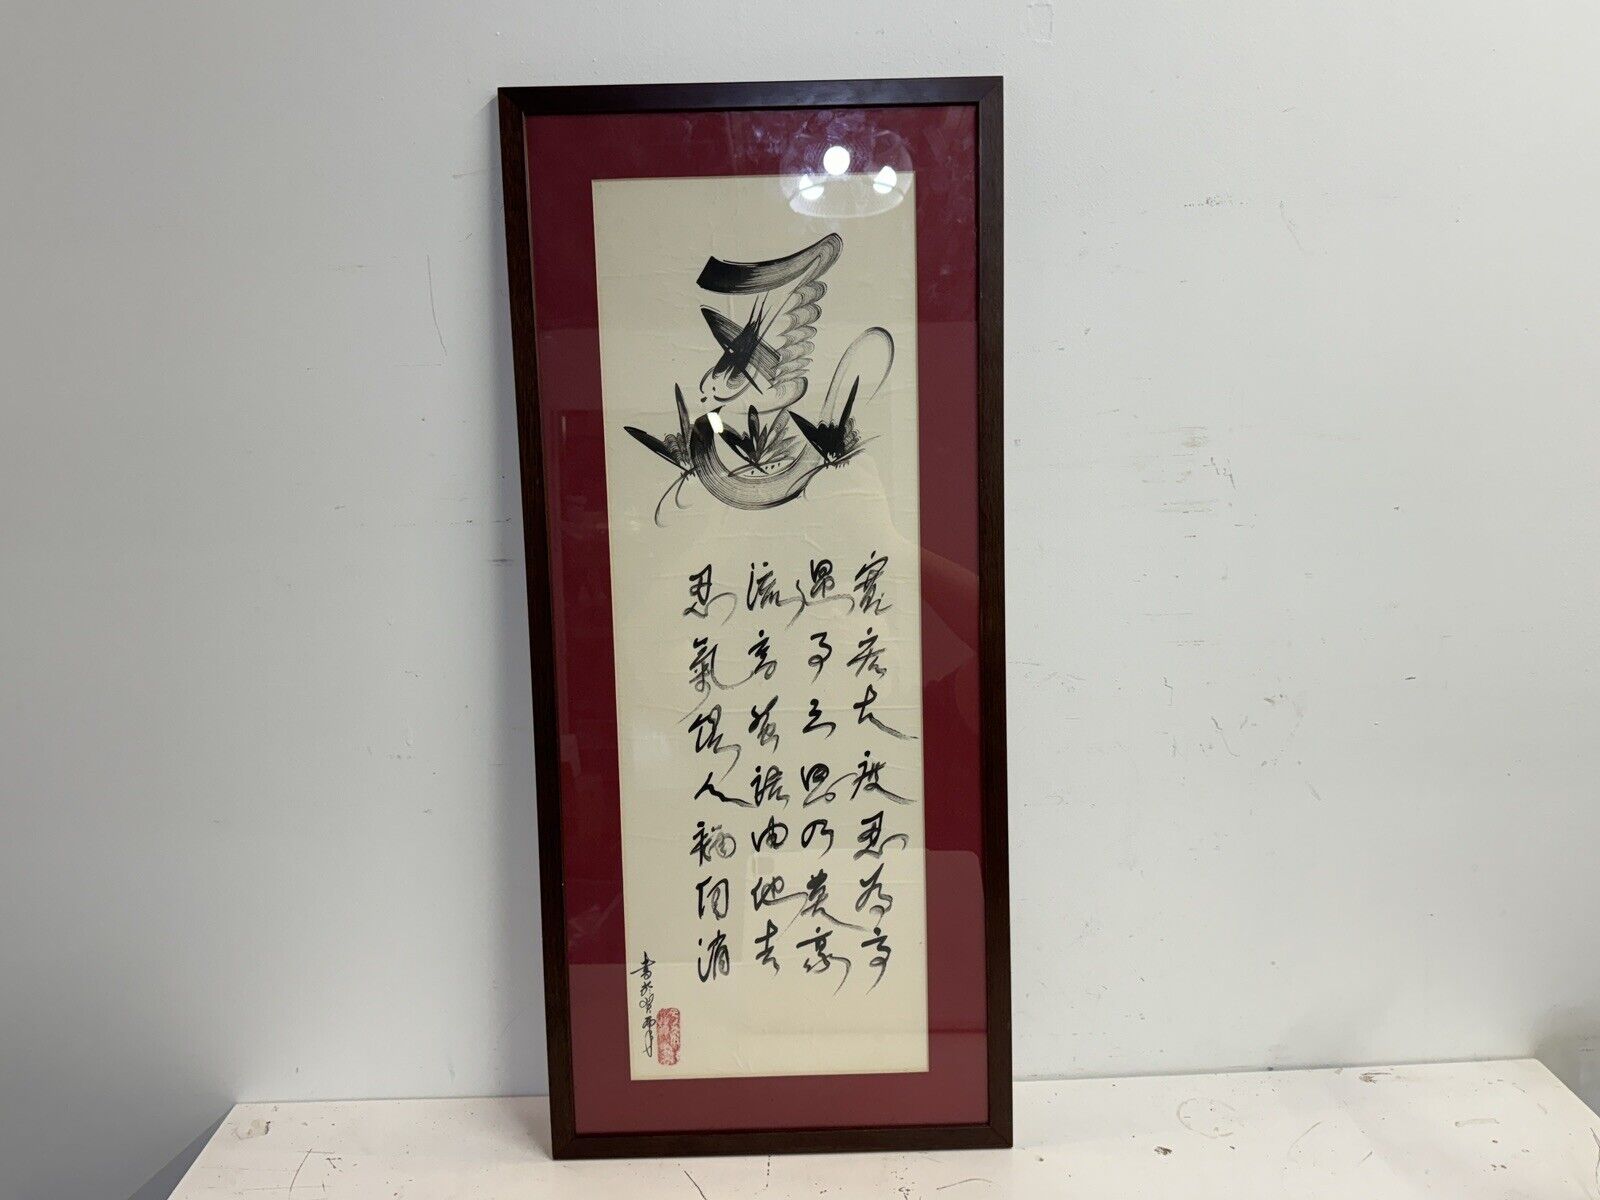 Vintage Chinese “Tolerance” Poem Decorative Scroll Framed